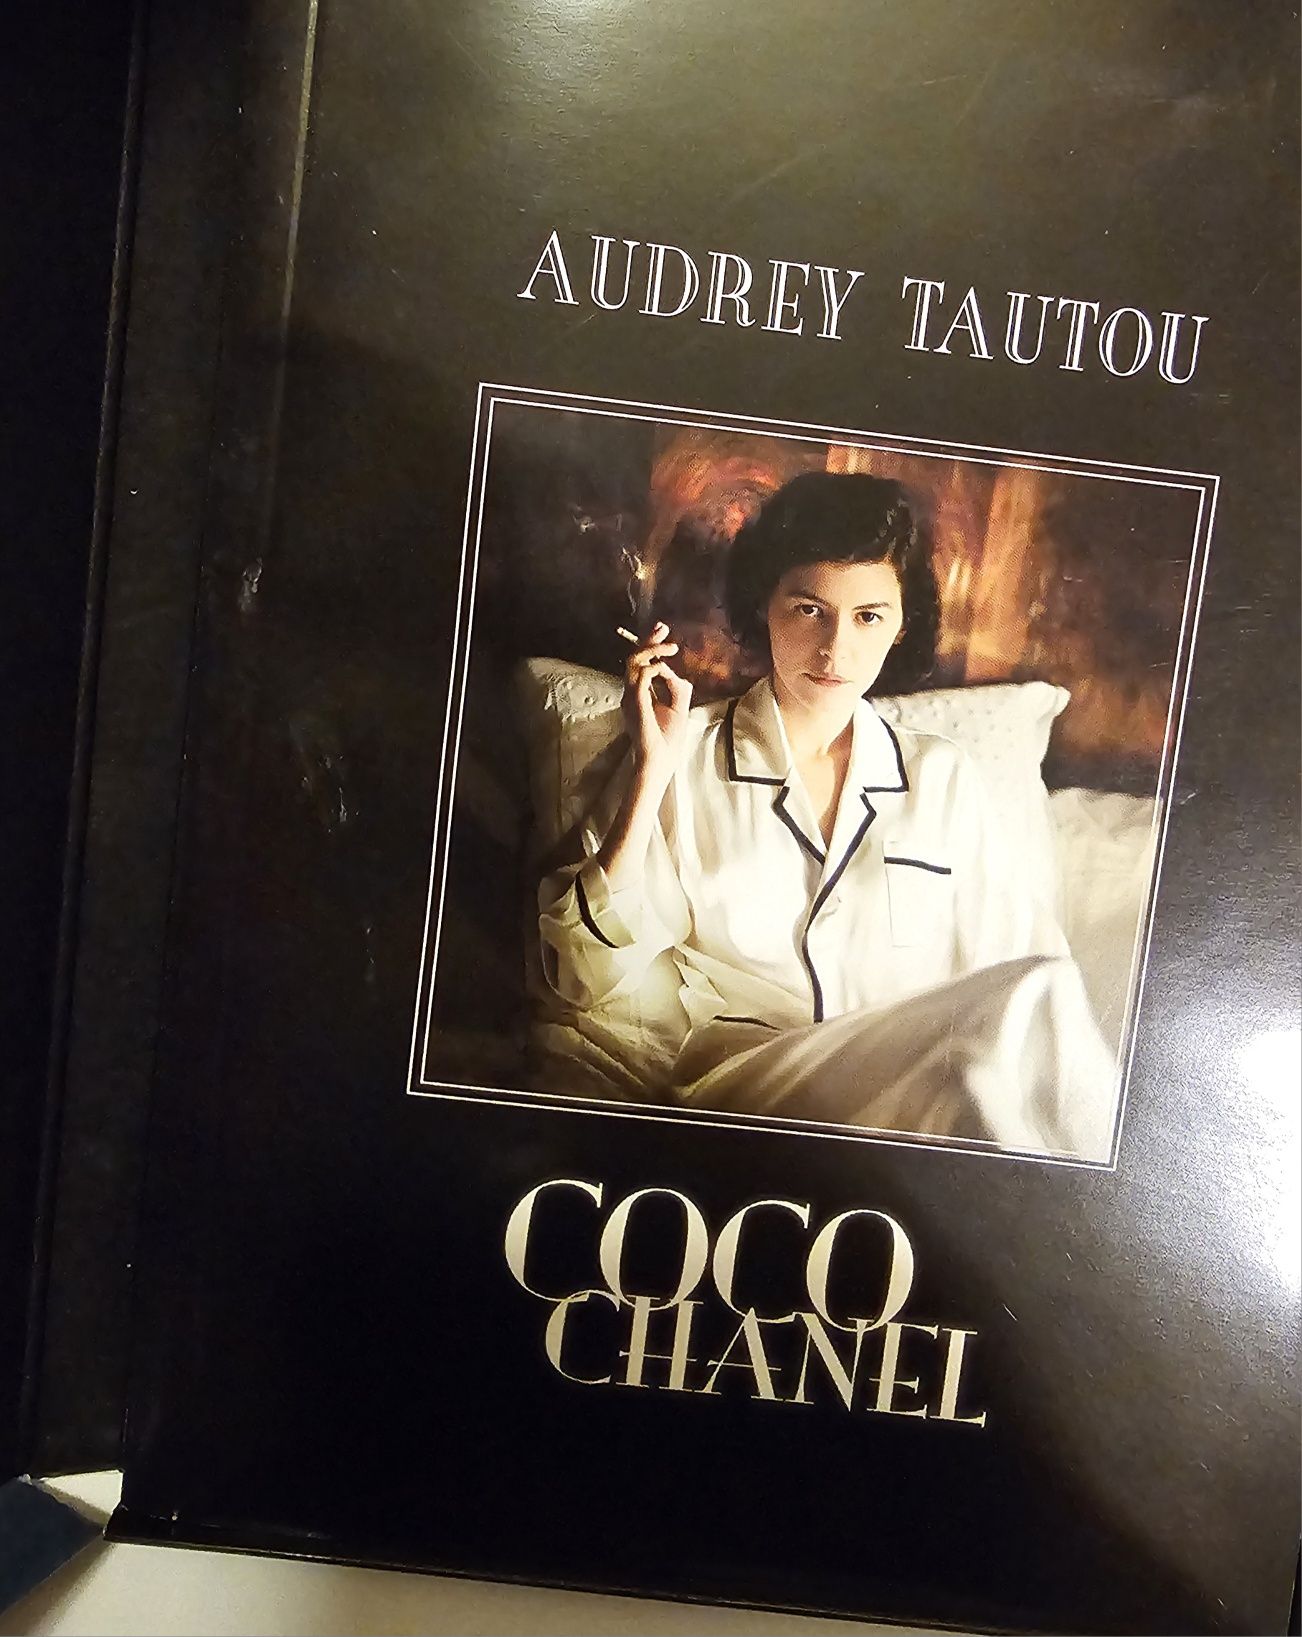 Coco Chanel film dvd Audrey Tatou książeczka kolekcjoner